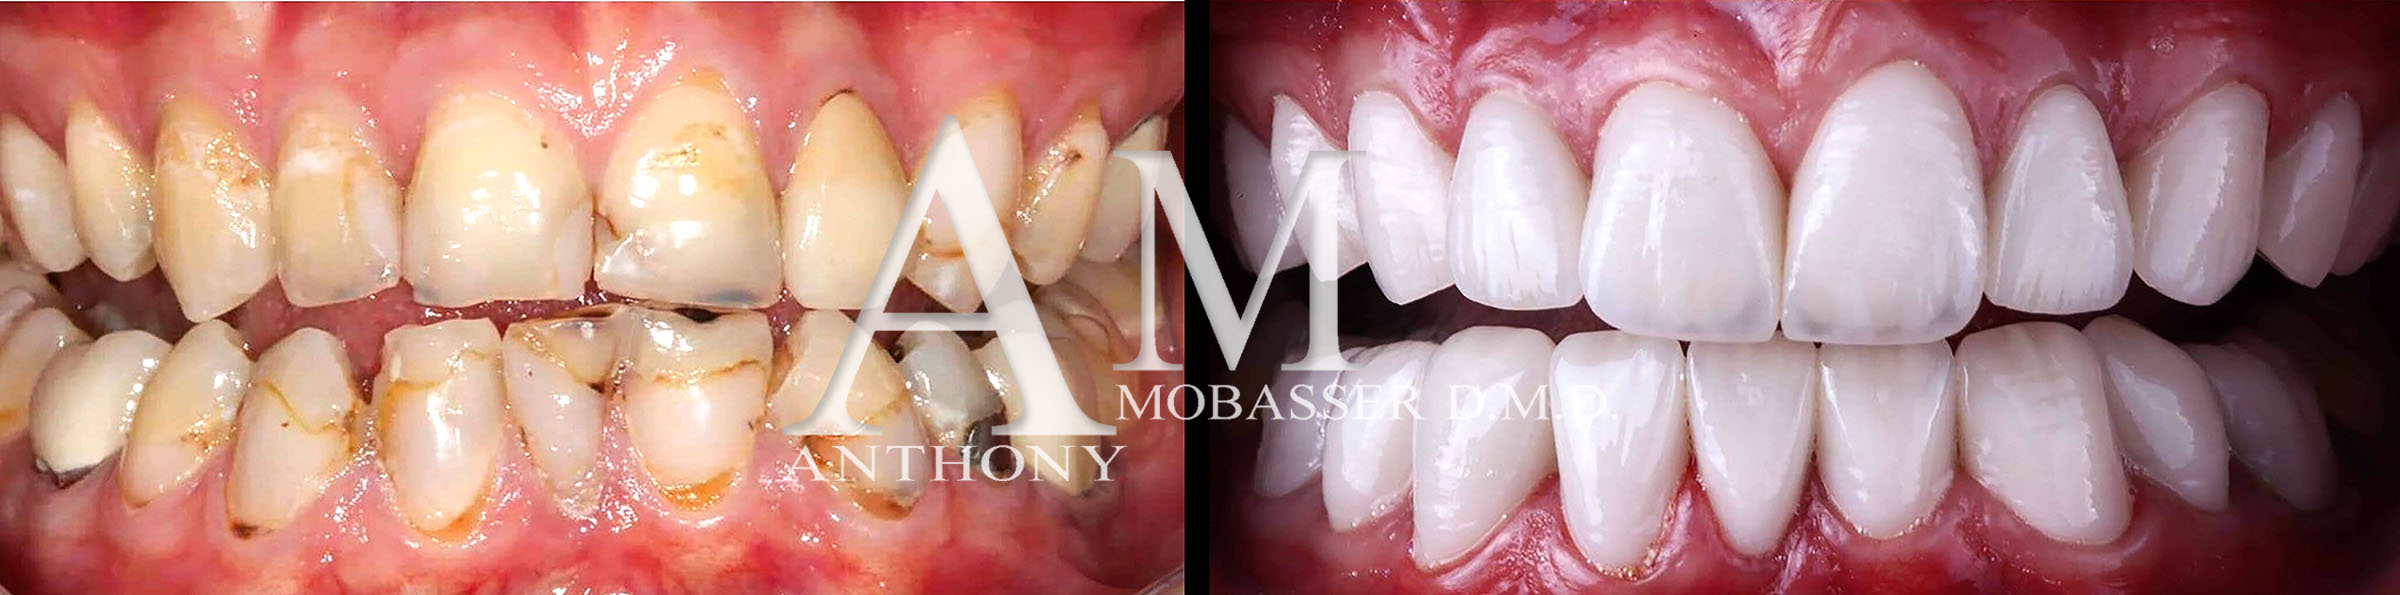 全球最佳美容牙医 | Anthony Mobasser 博士